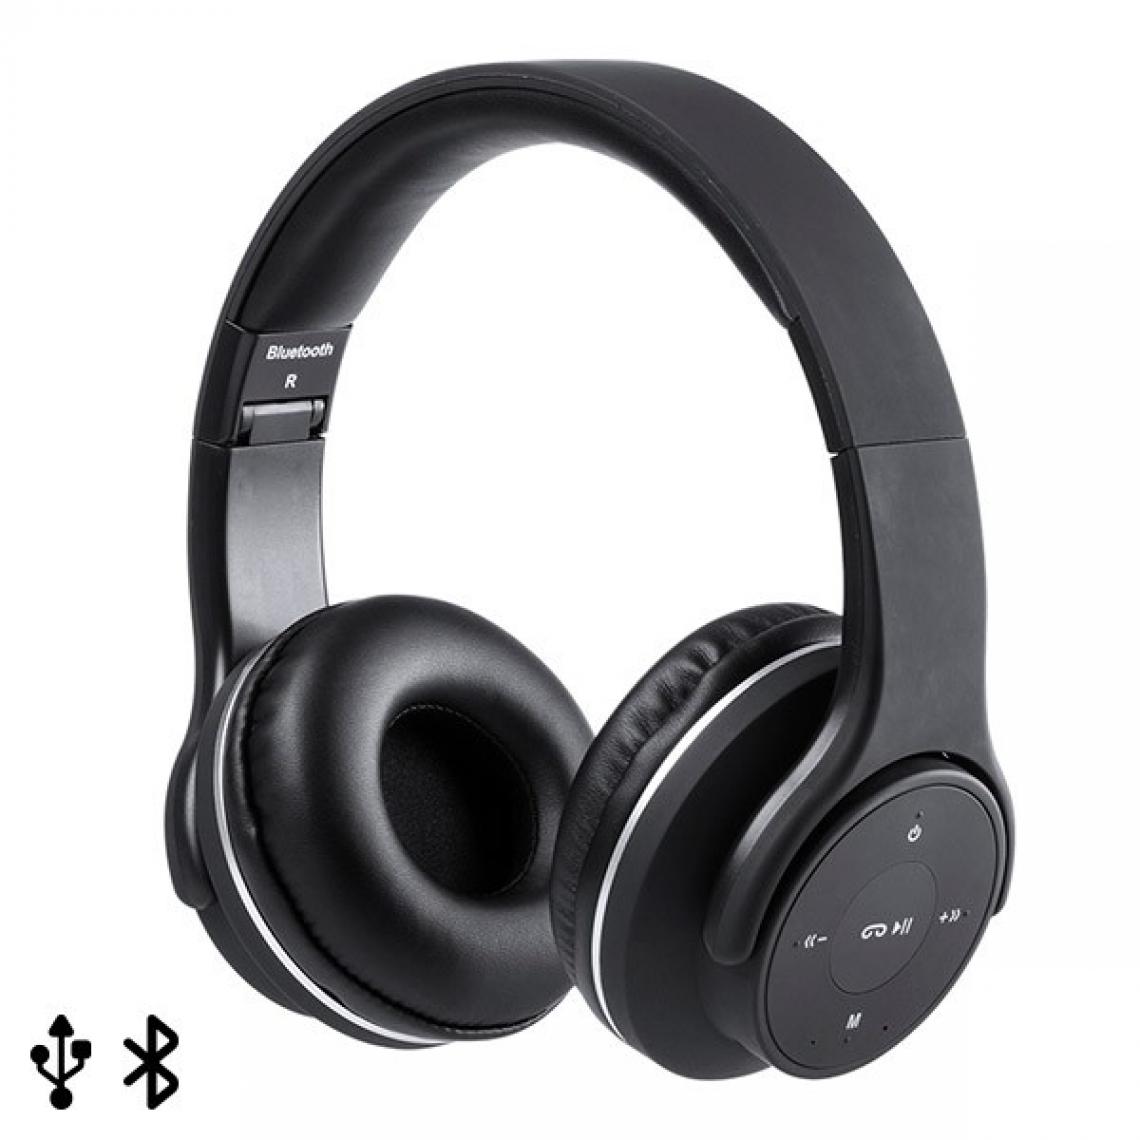 Totalcadeau - Ecouteurs Pliables avec Bluetooth USB FM 6W Noir Couleur - Noir pas cher - Barre de son